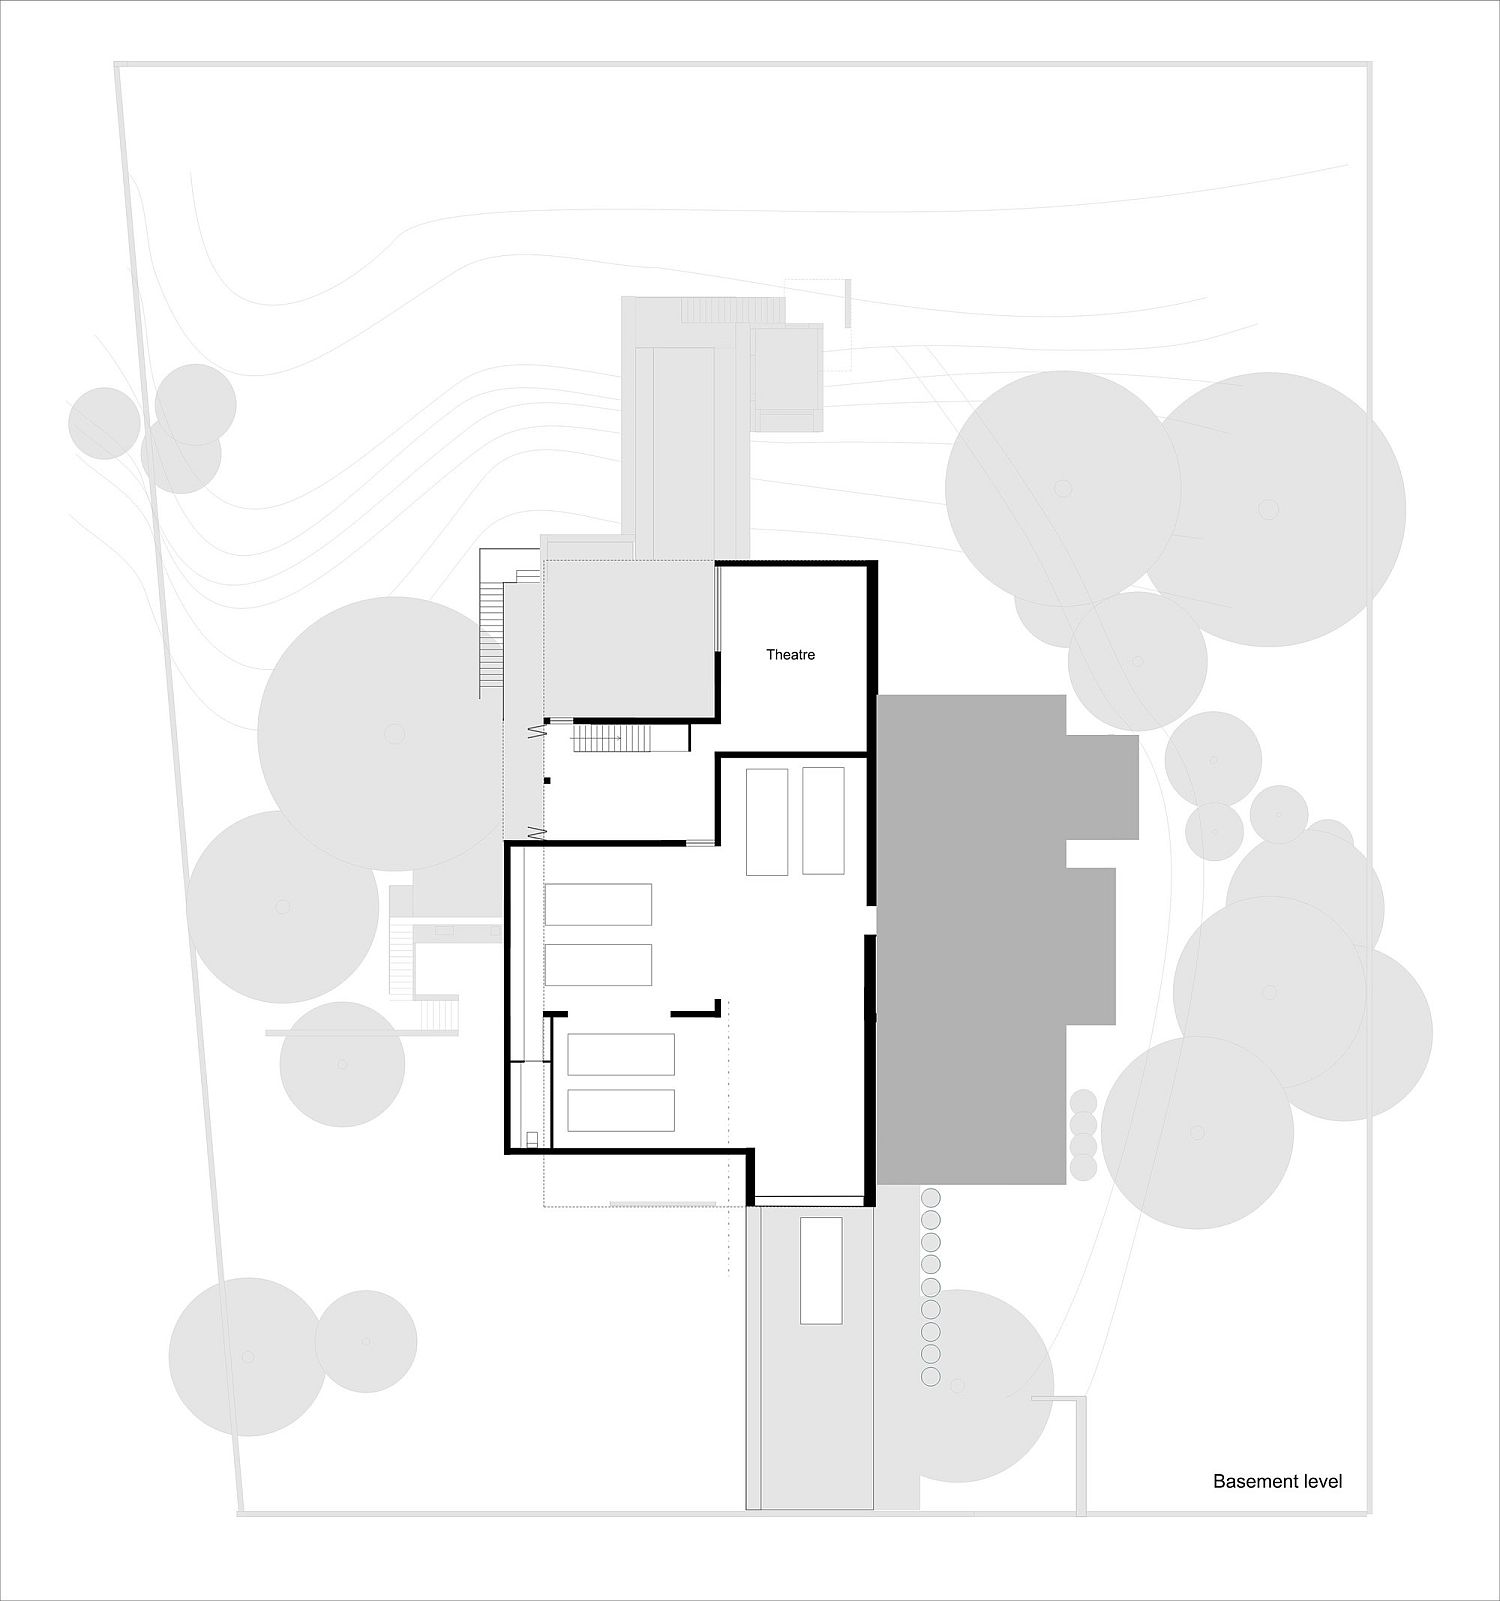 Basement-floor-plan-of-the-modern-Aussie-home